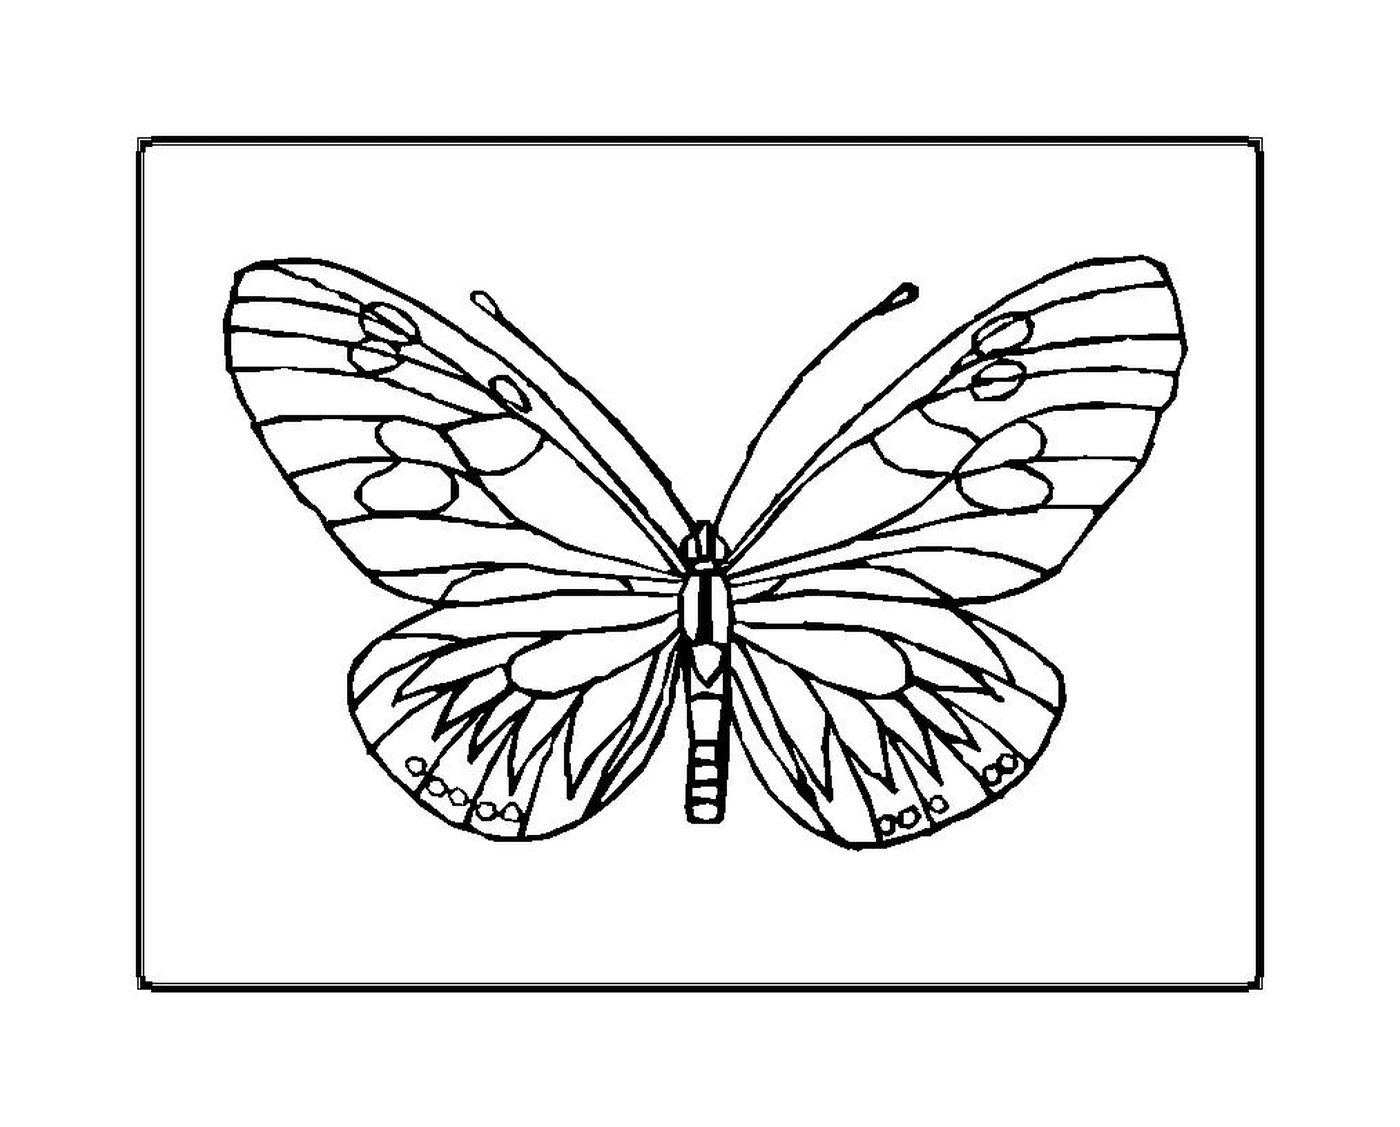  delicada y frágil mariposa 